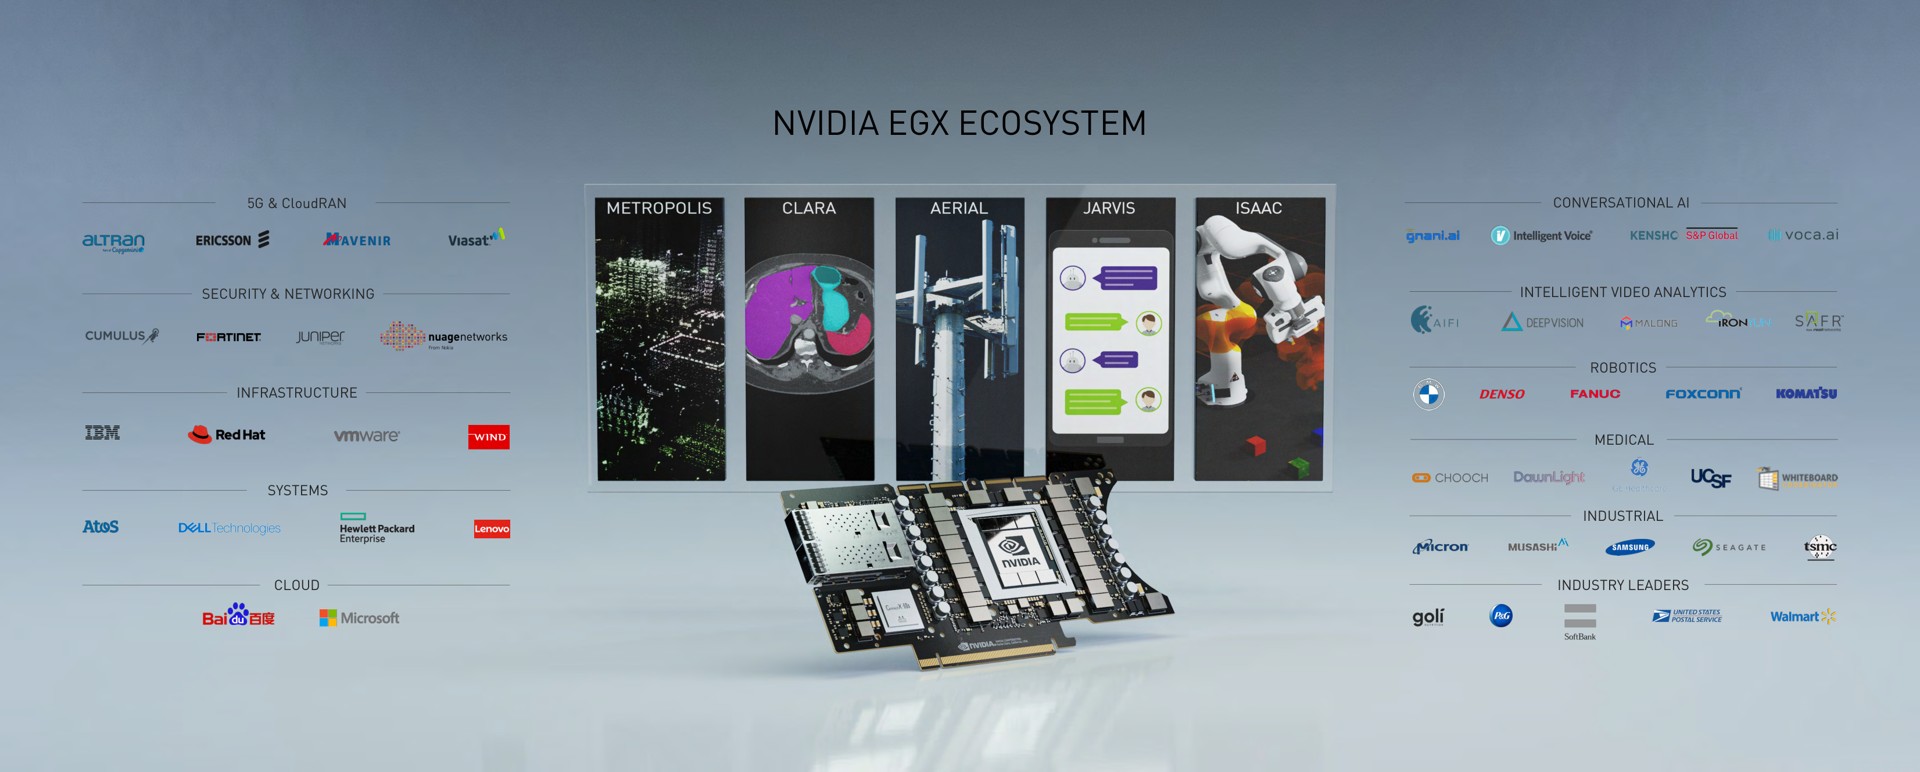 ecosystem i | NVIDIA